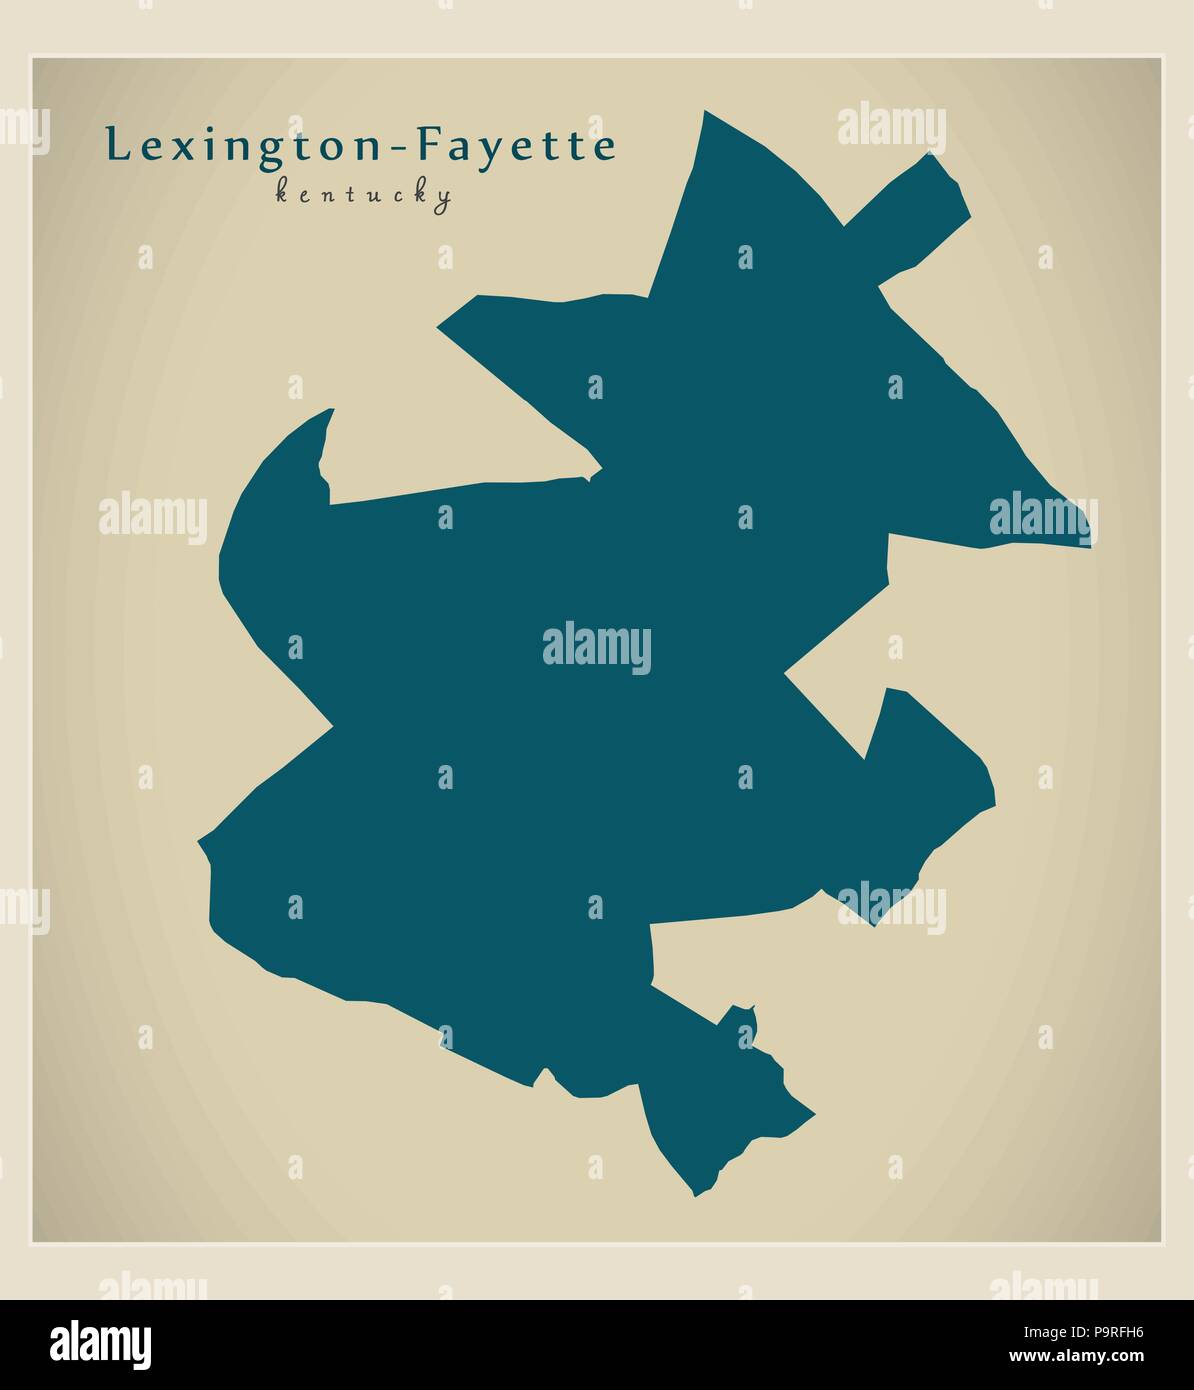 Città moderna mappa - Lexington-Fayette Kentucky città degli STATI UNITI D'AMERICA Illustrazione Vettoriale